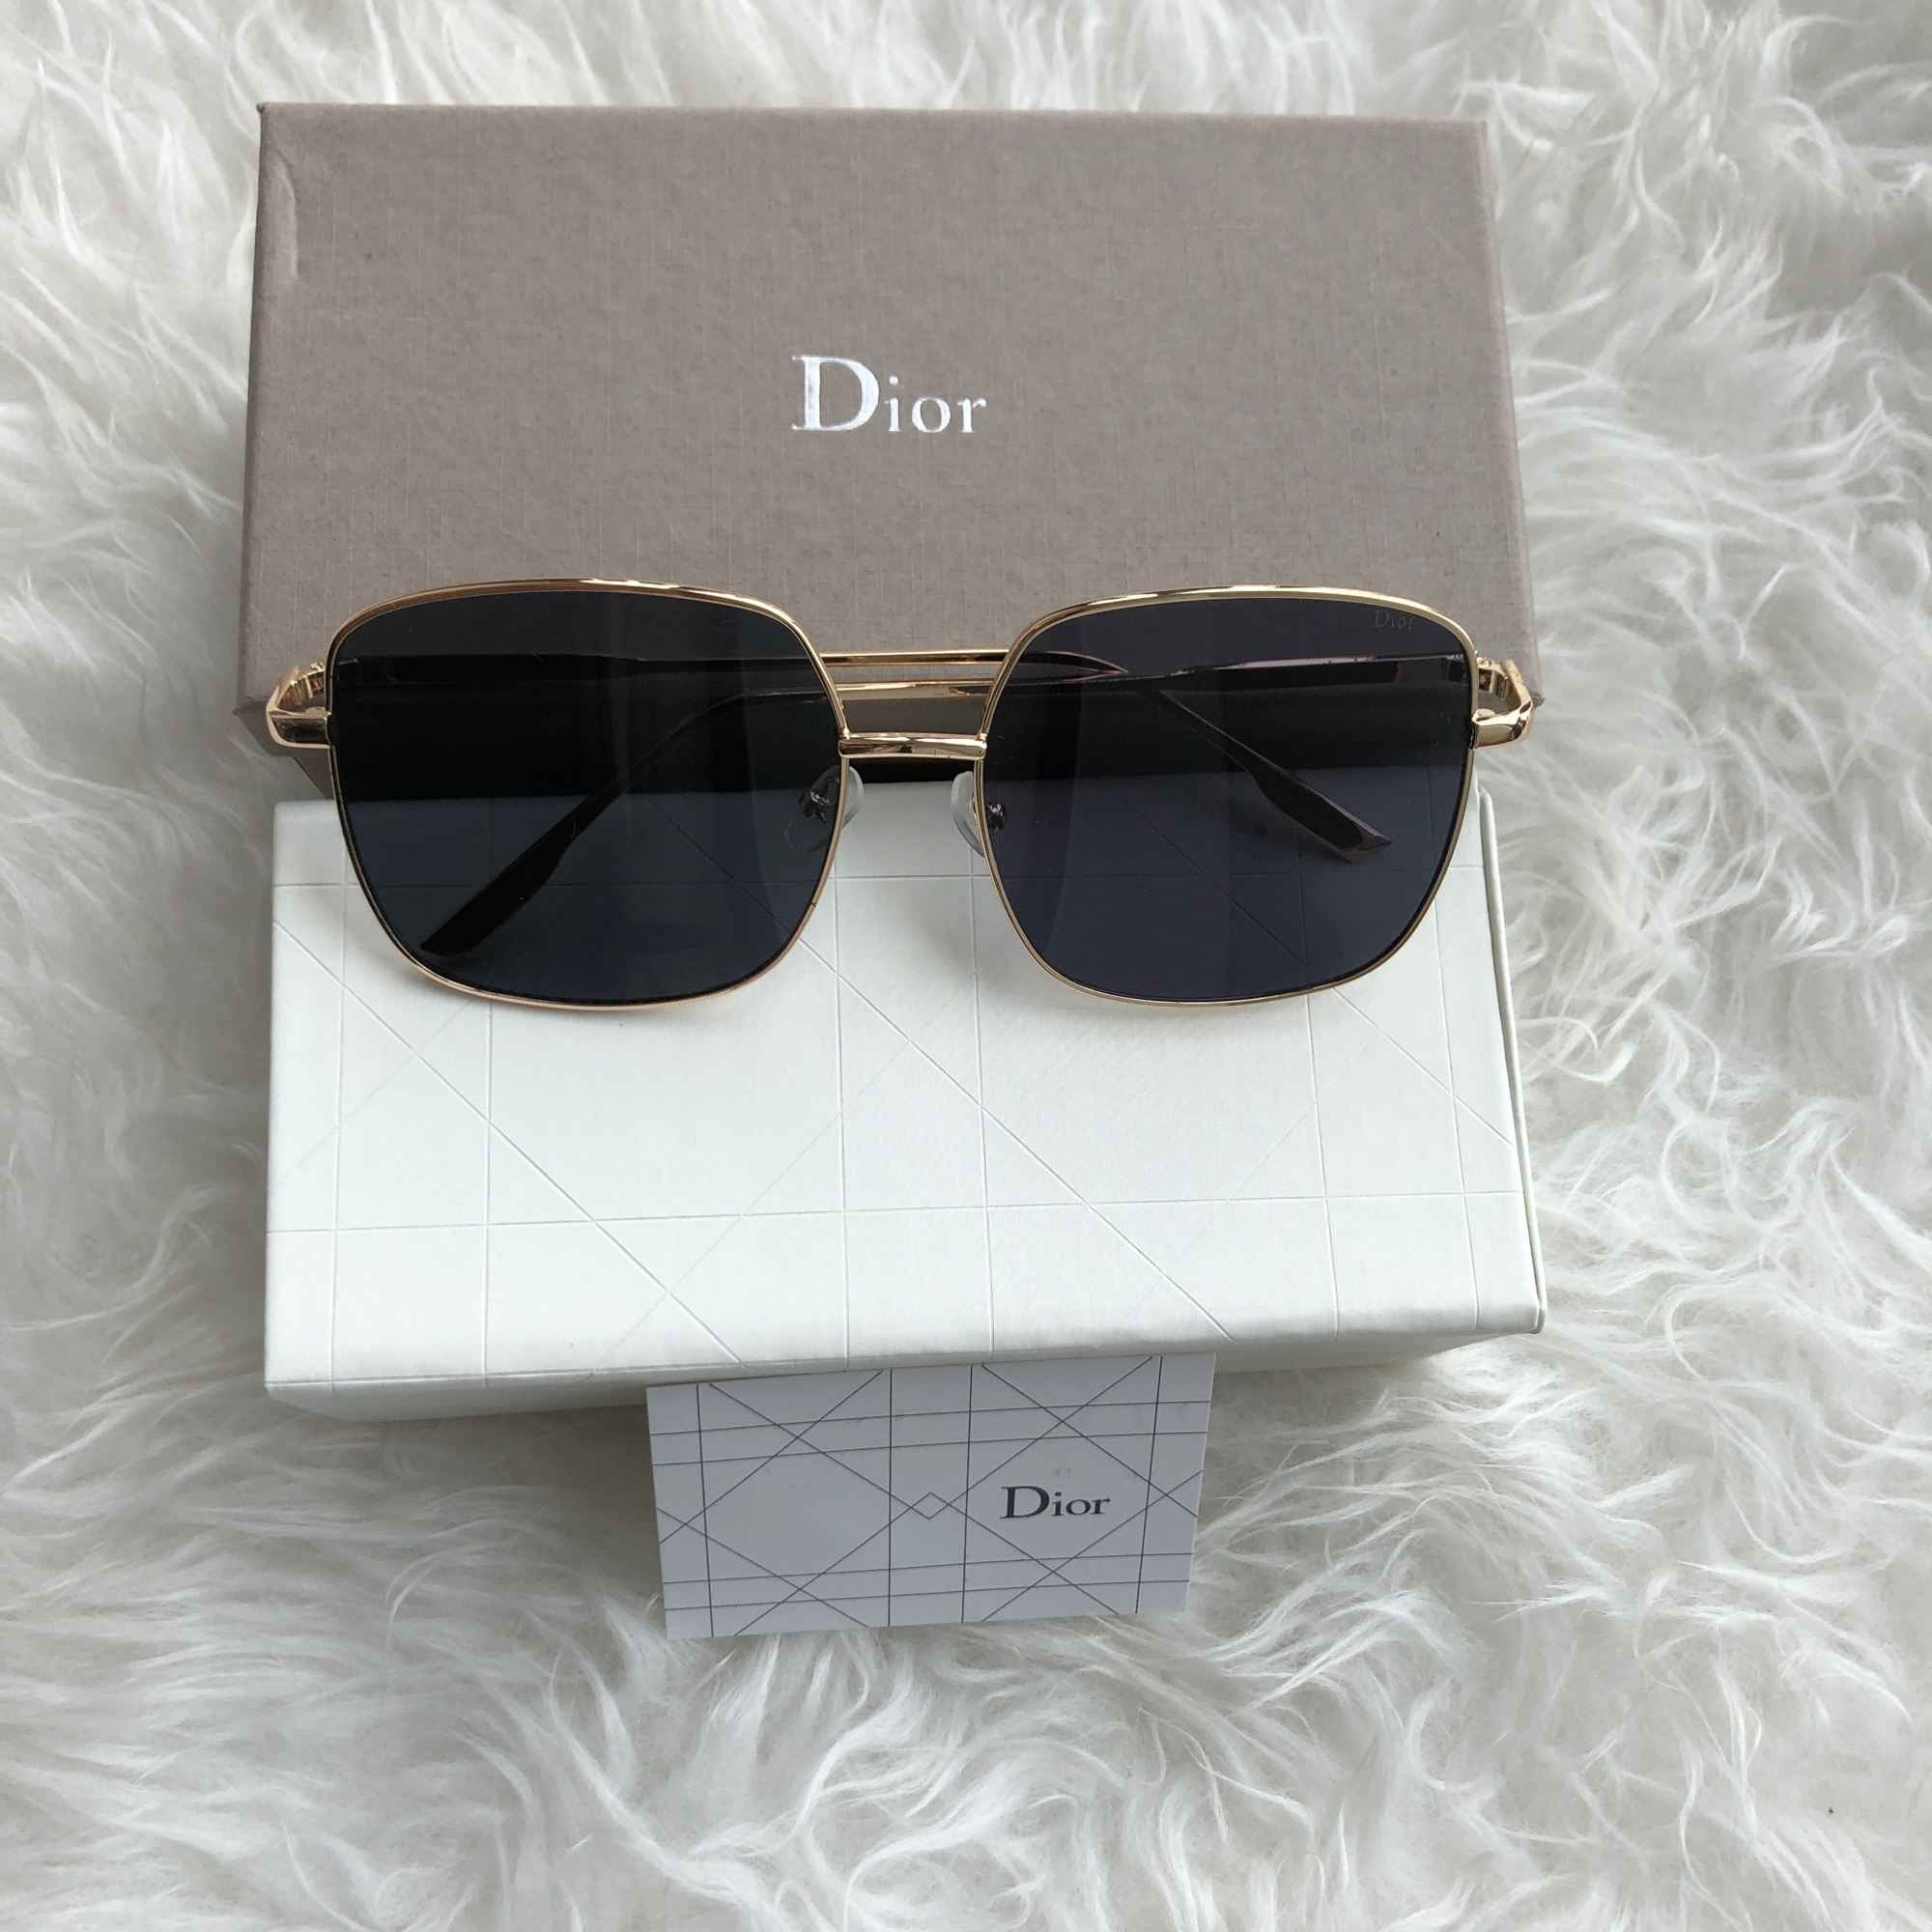 แว่นตาแฟชั่น Dior แท้ กรอบ-ขา สีทอง Hi-end 💯💯💯